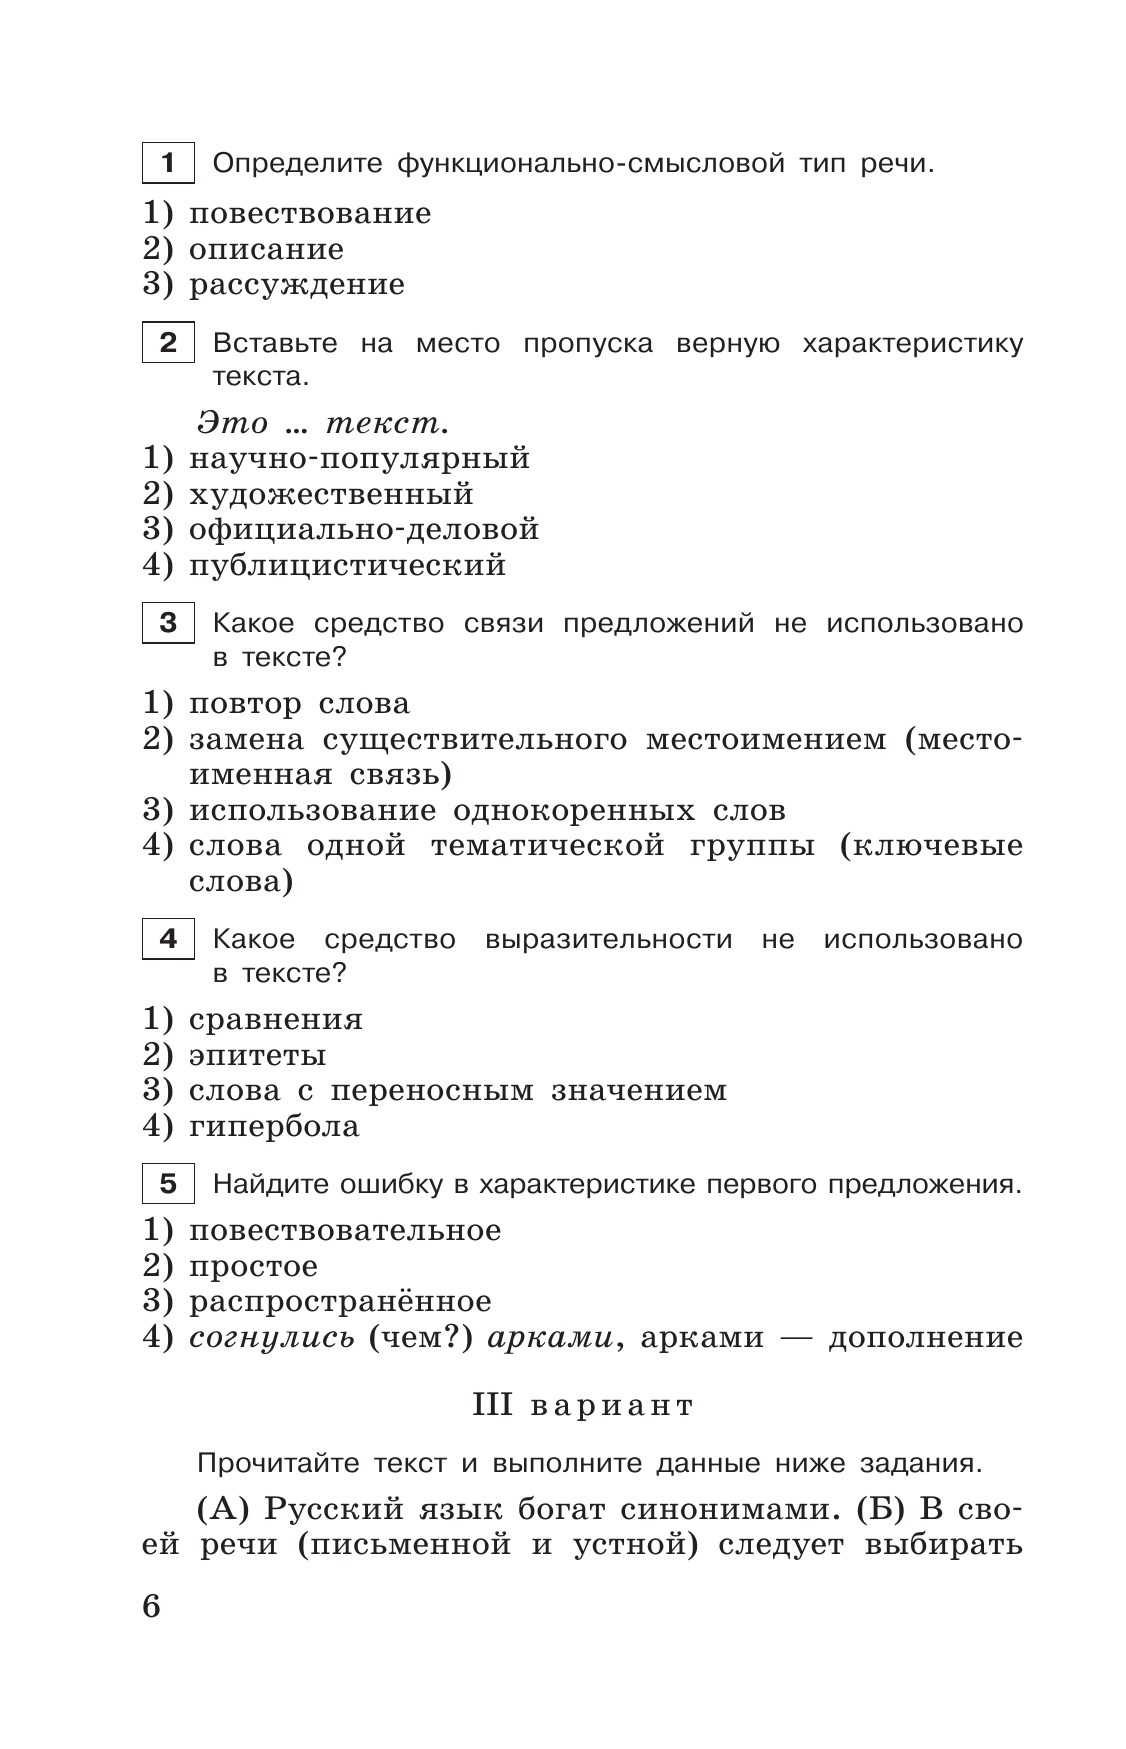 Тестовые задания по русскому языку. 6 класс. 8